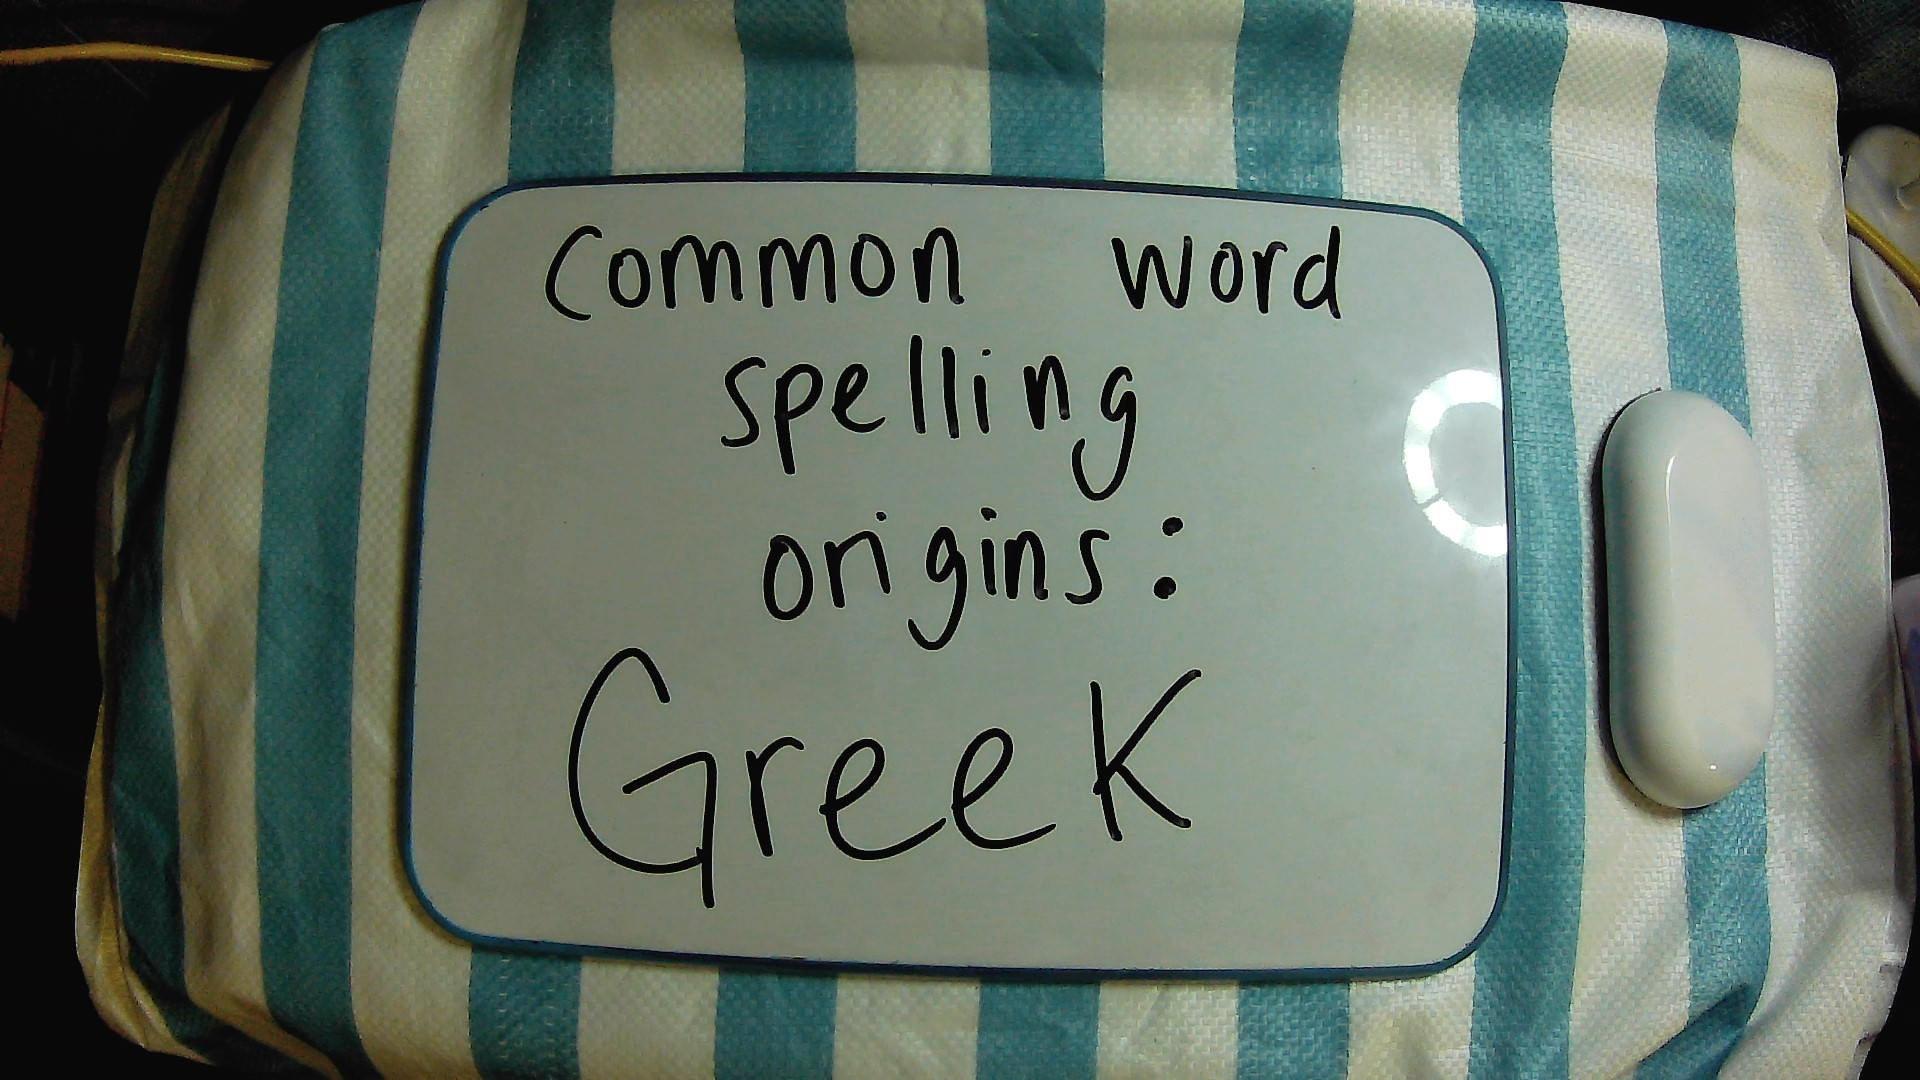 Word Spellings with a Greek Origin